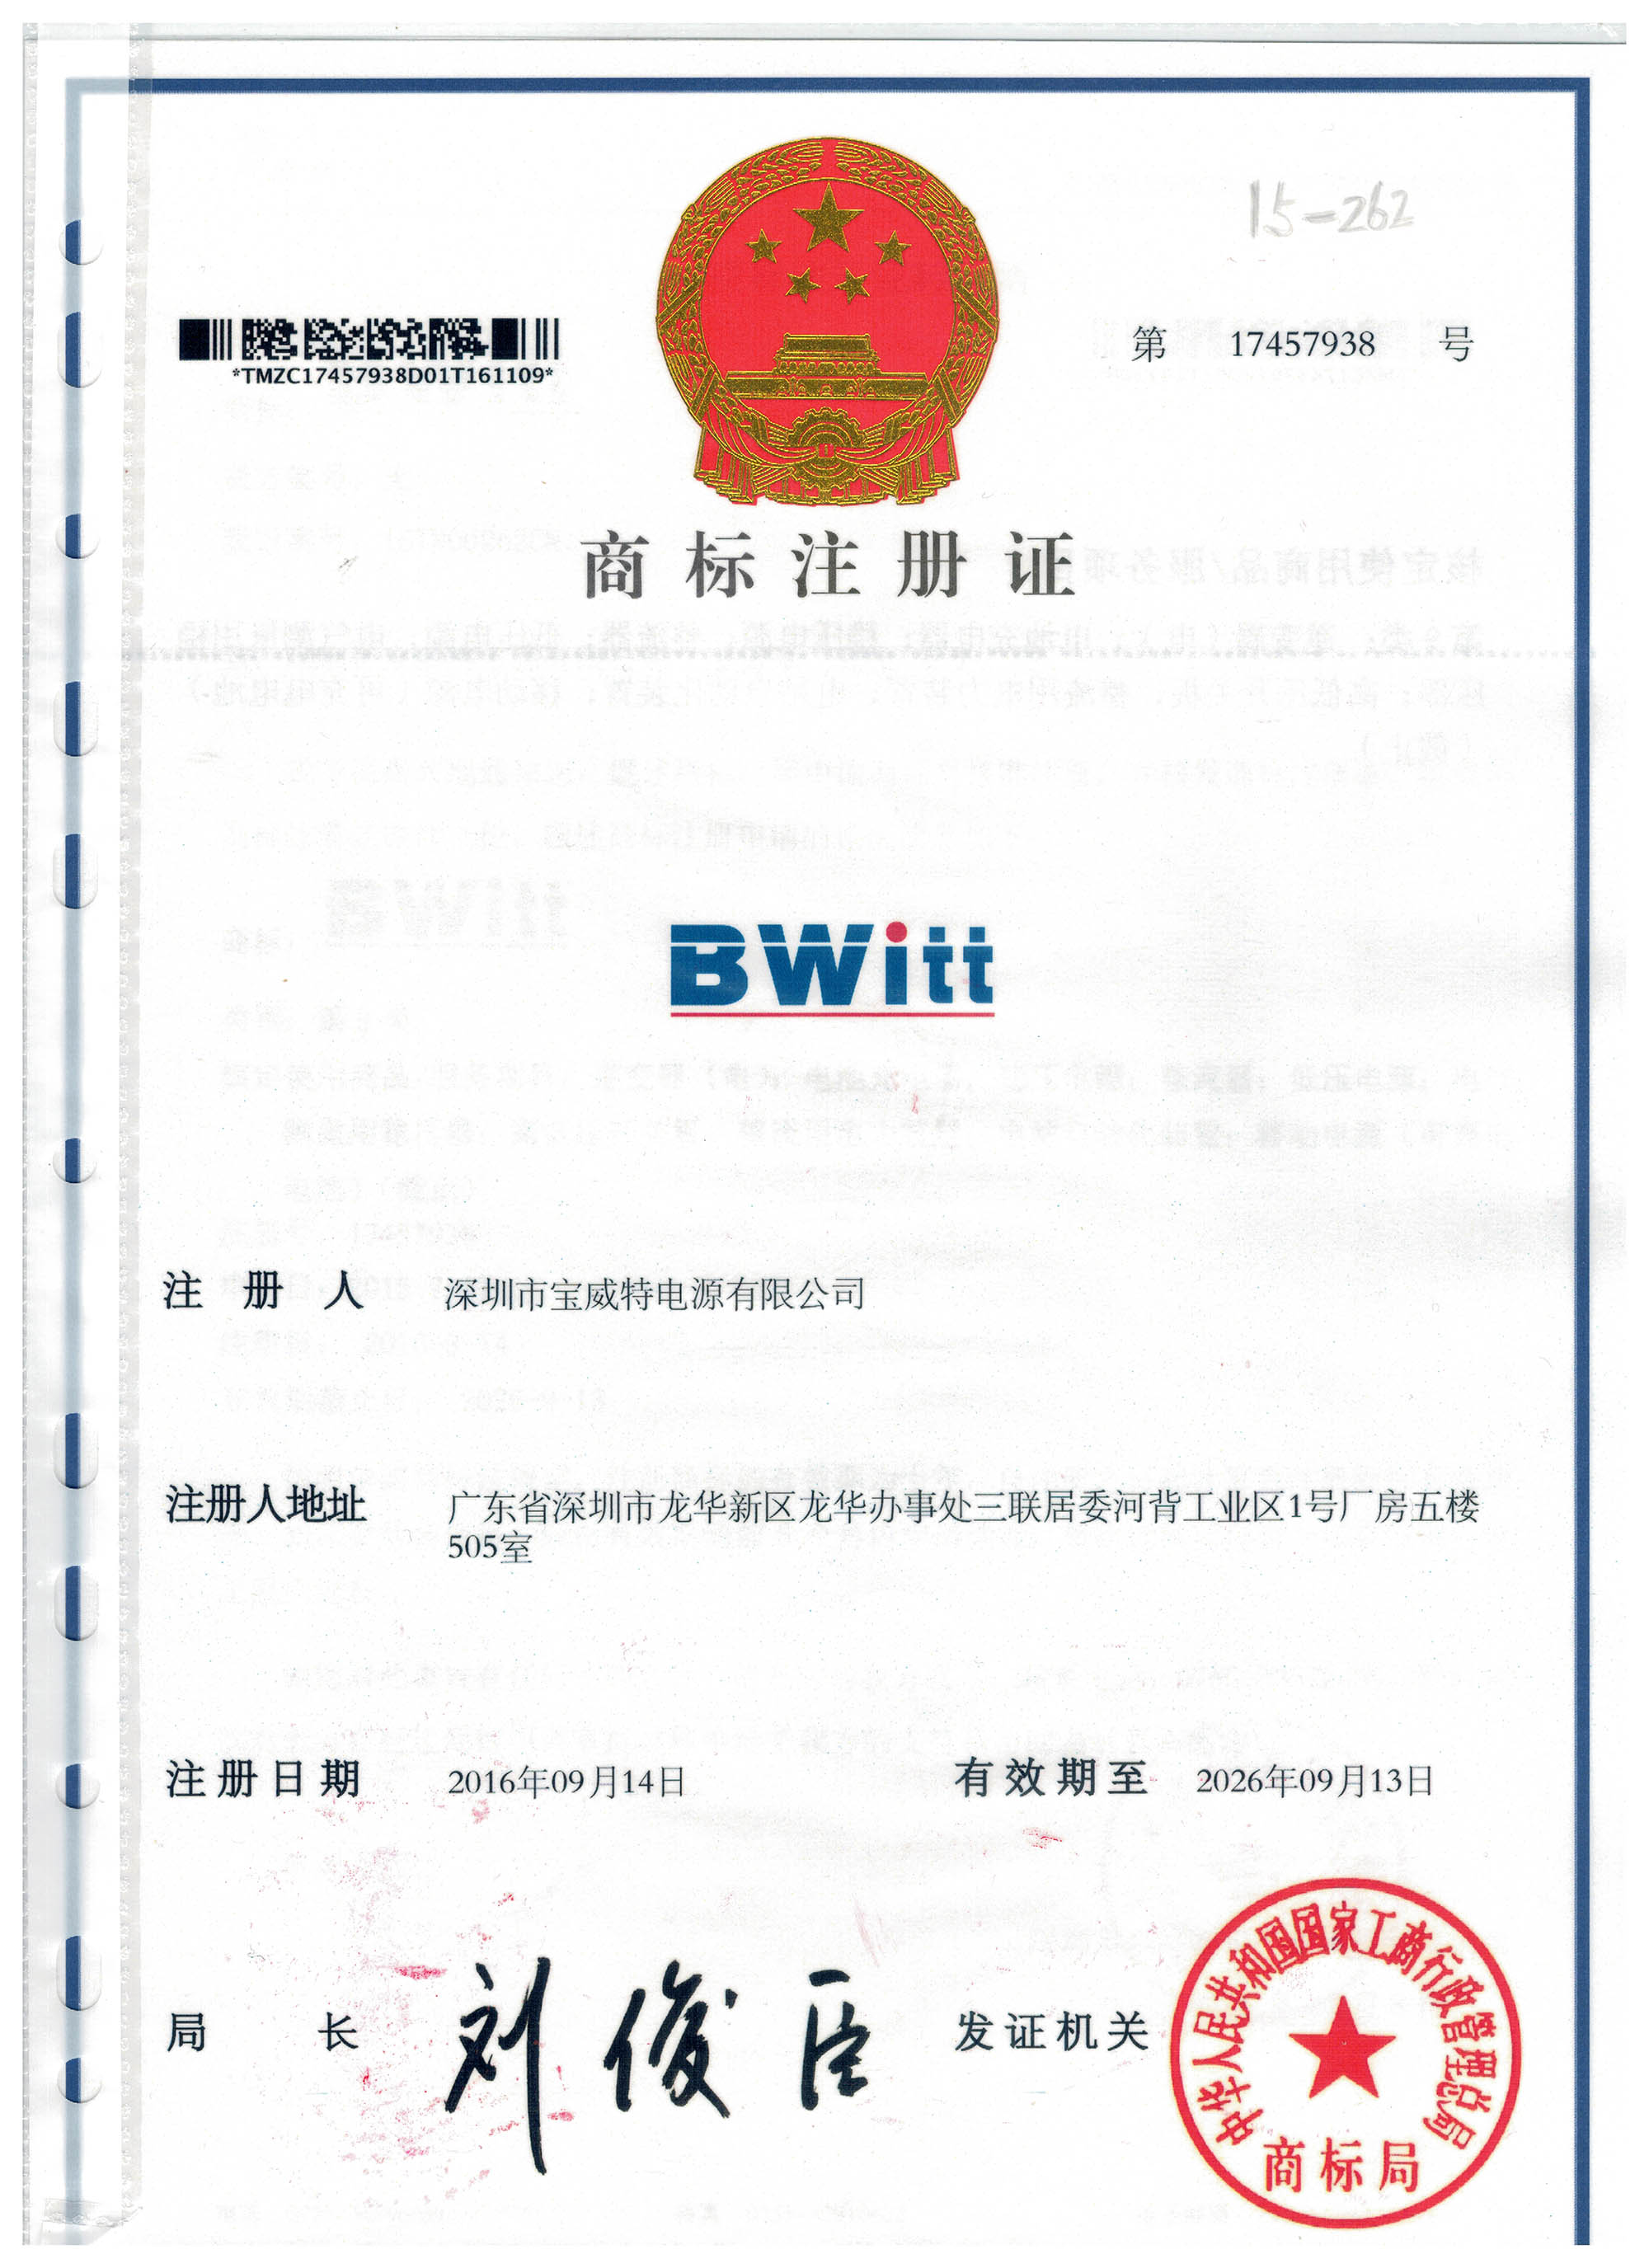 BWITT  Register of  Brand